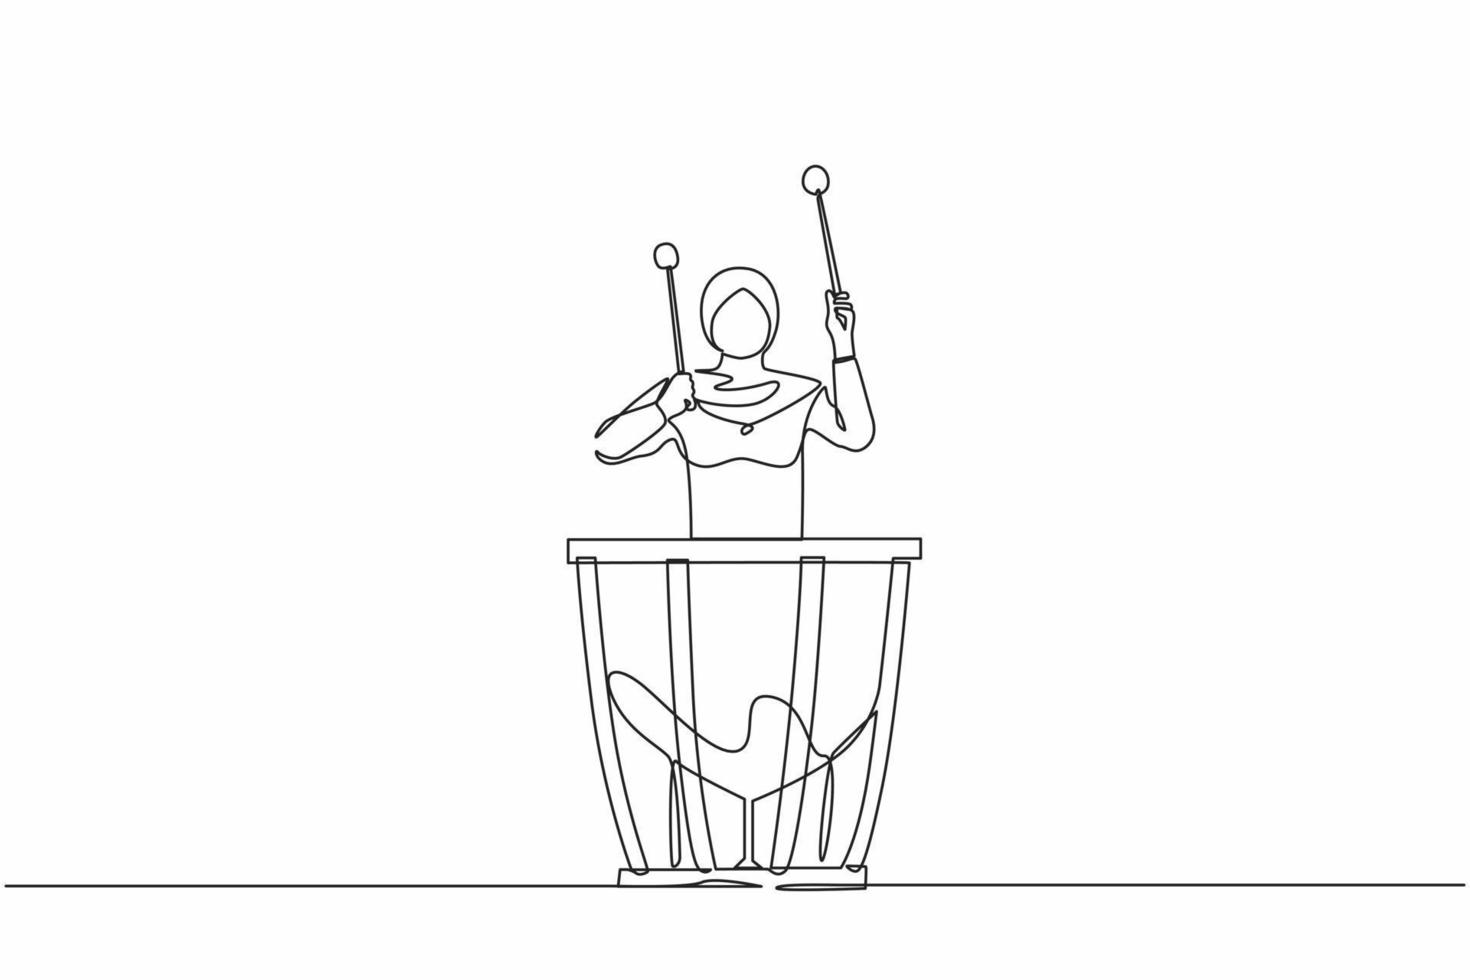 singola linea continua disegno suonatore di percussioni femminile araba sui timpani. esecutore donna che tiene bastone e suona uno strumento musicale. timpani di strumenti musicali. vettore di progettazione grafica a una linea